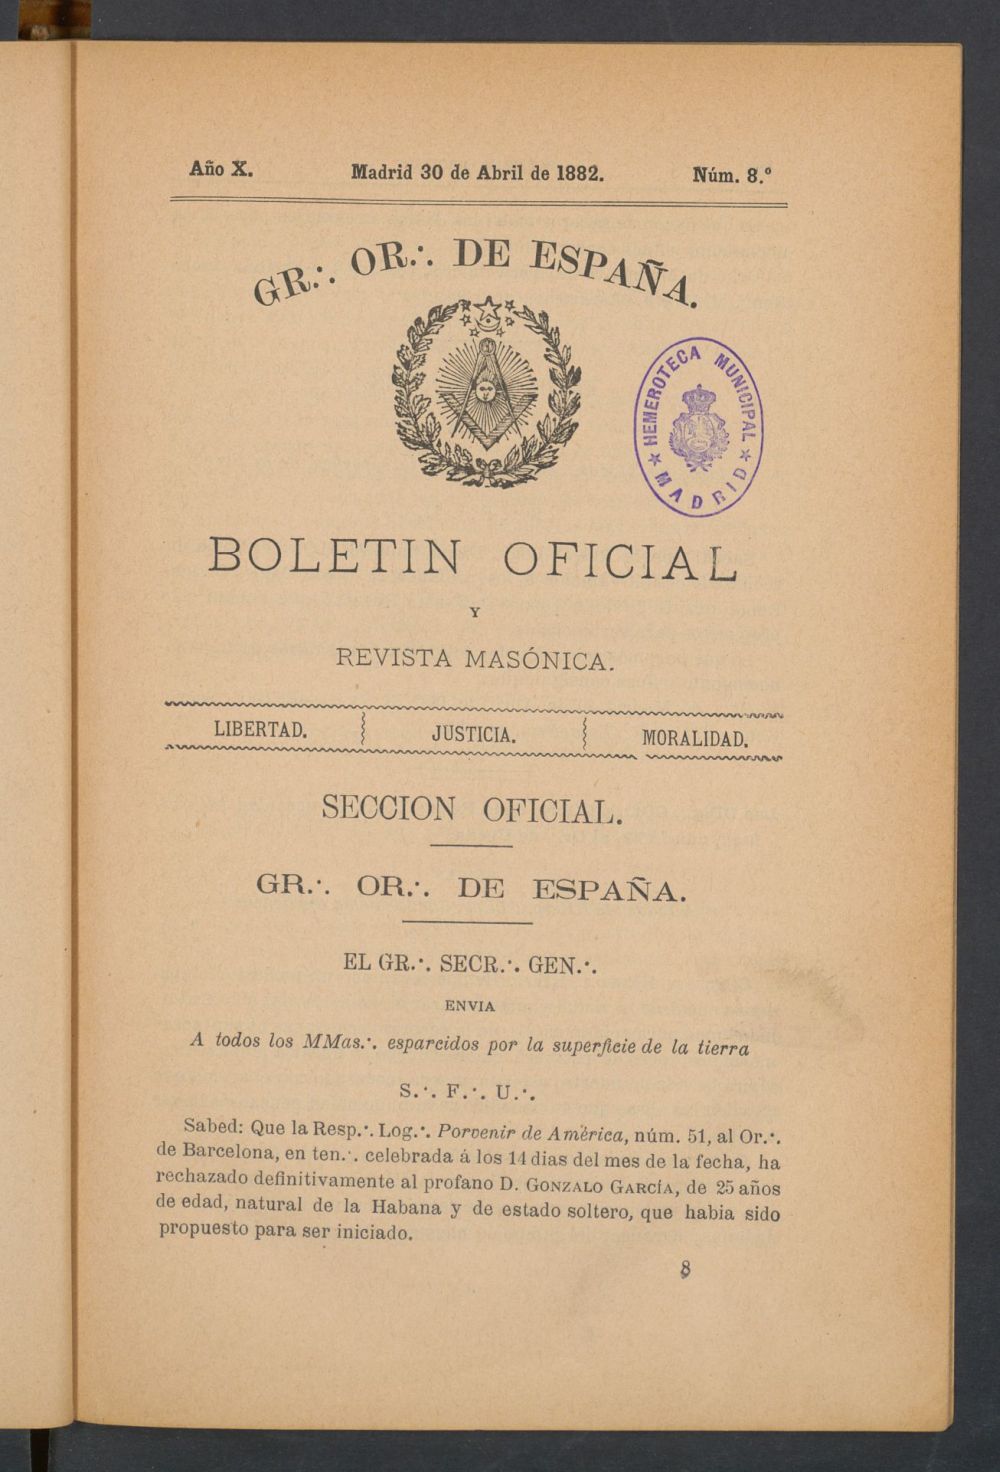 Boletn Oficial del Gran Oriente de Espaa del 30 de abril de 1882. N 8